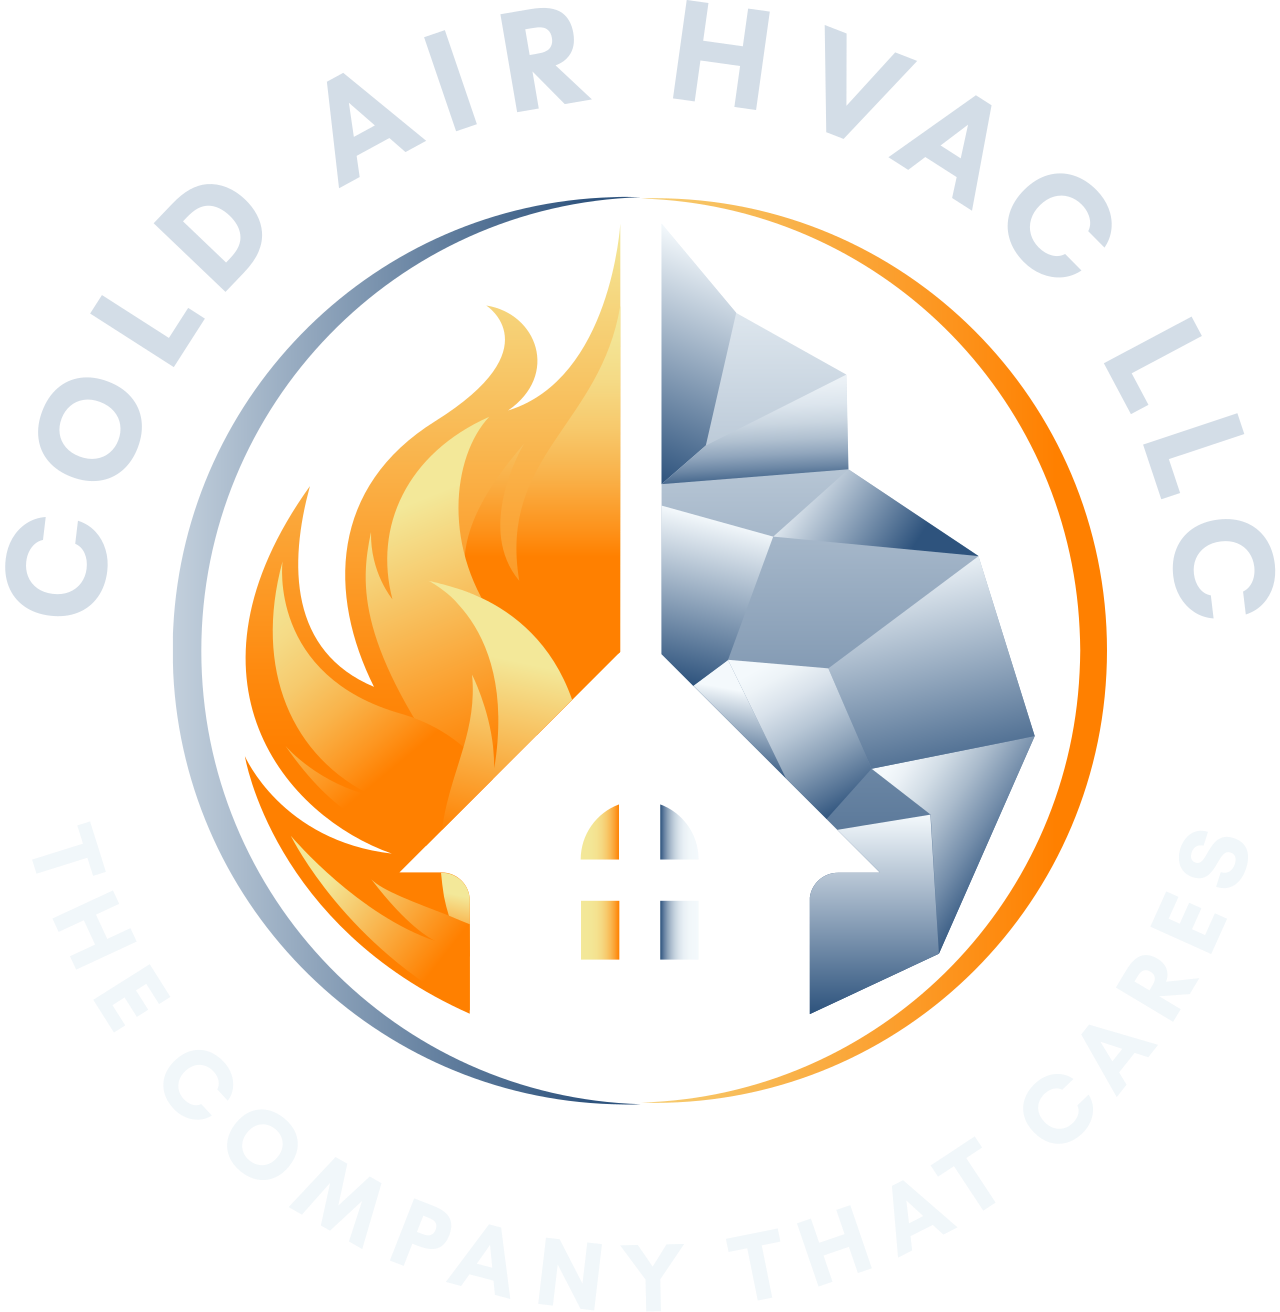 Cold Air HVAC LLC's logo